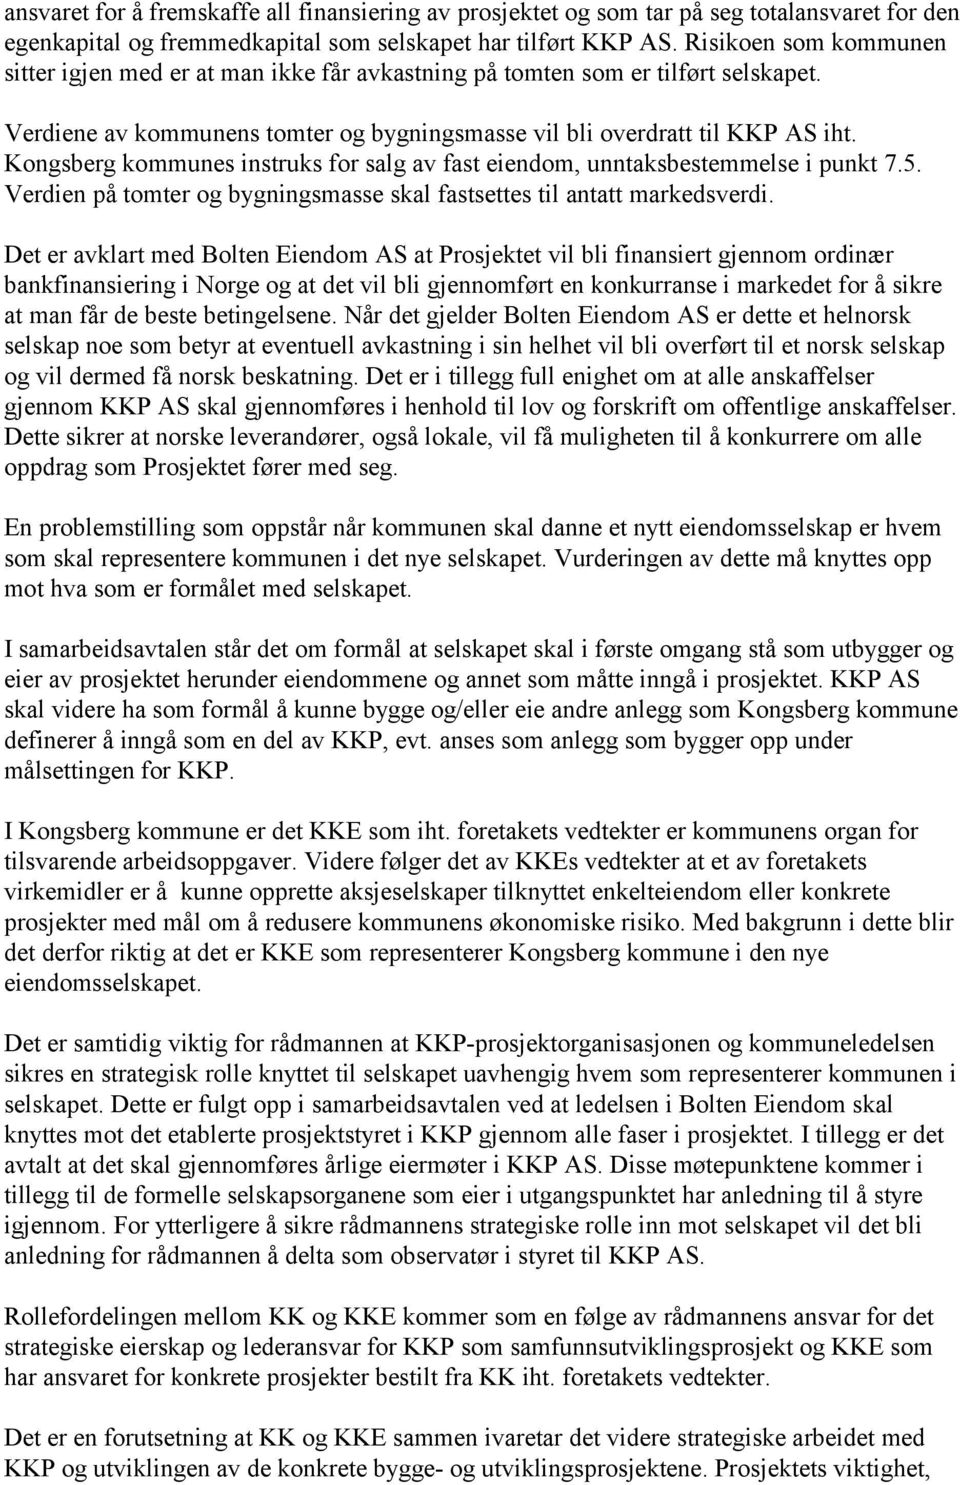 Kongsberg kommunes instruks for salg av fast eiendom, unntaksbestemmelse i punkt 7.5. Verdien på tomter og bygningsmasse skal fastsettes til antatt markedsverdi.